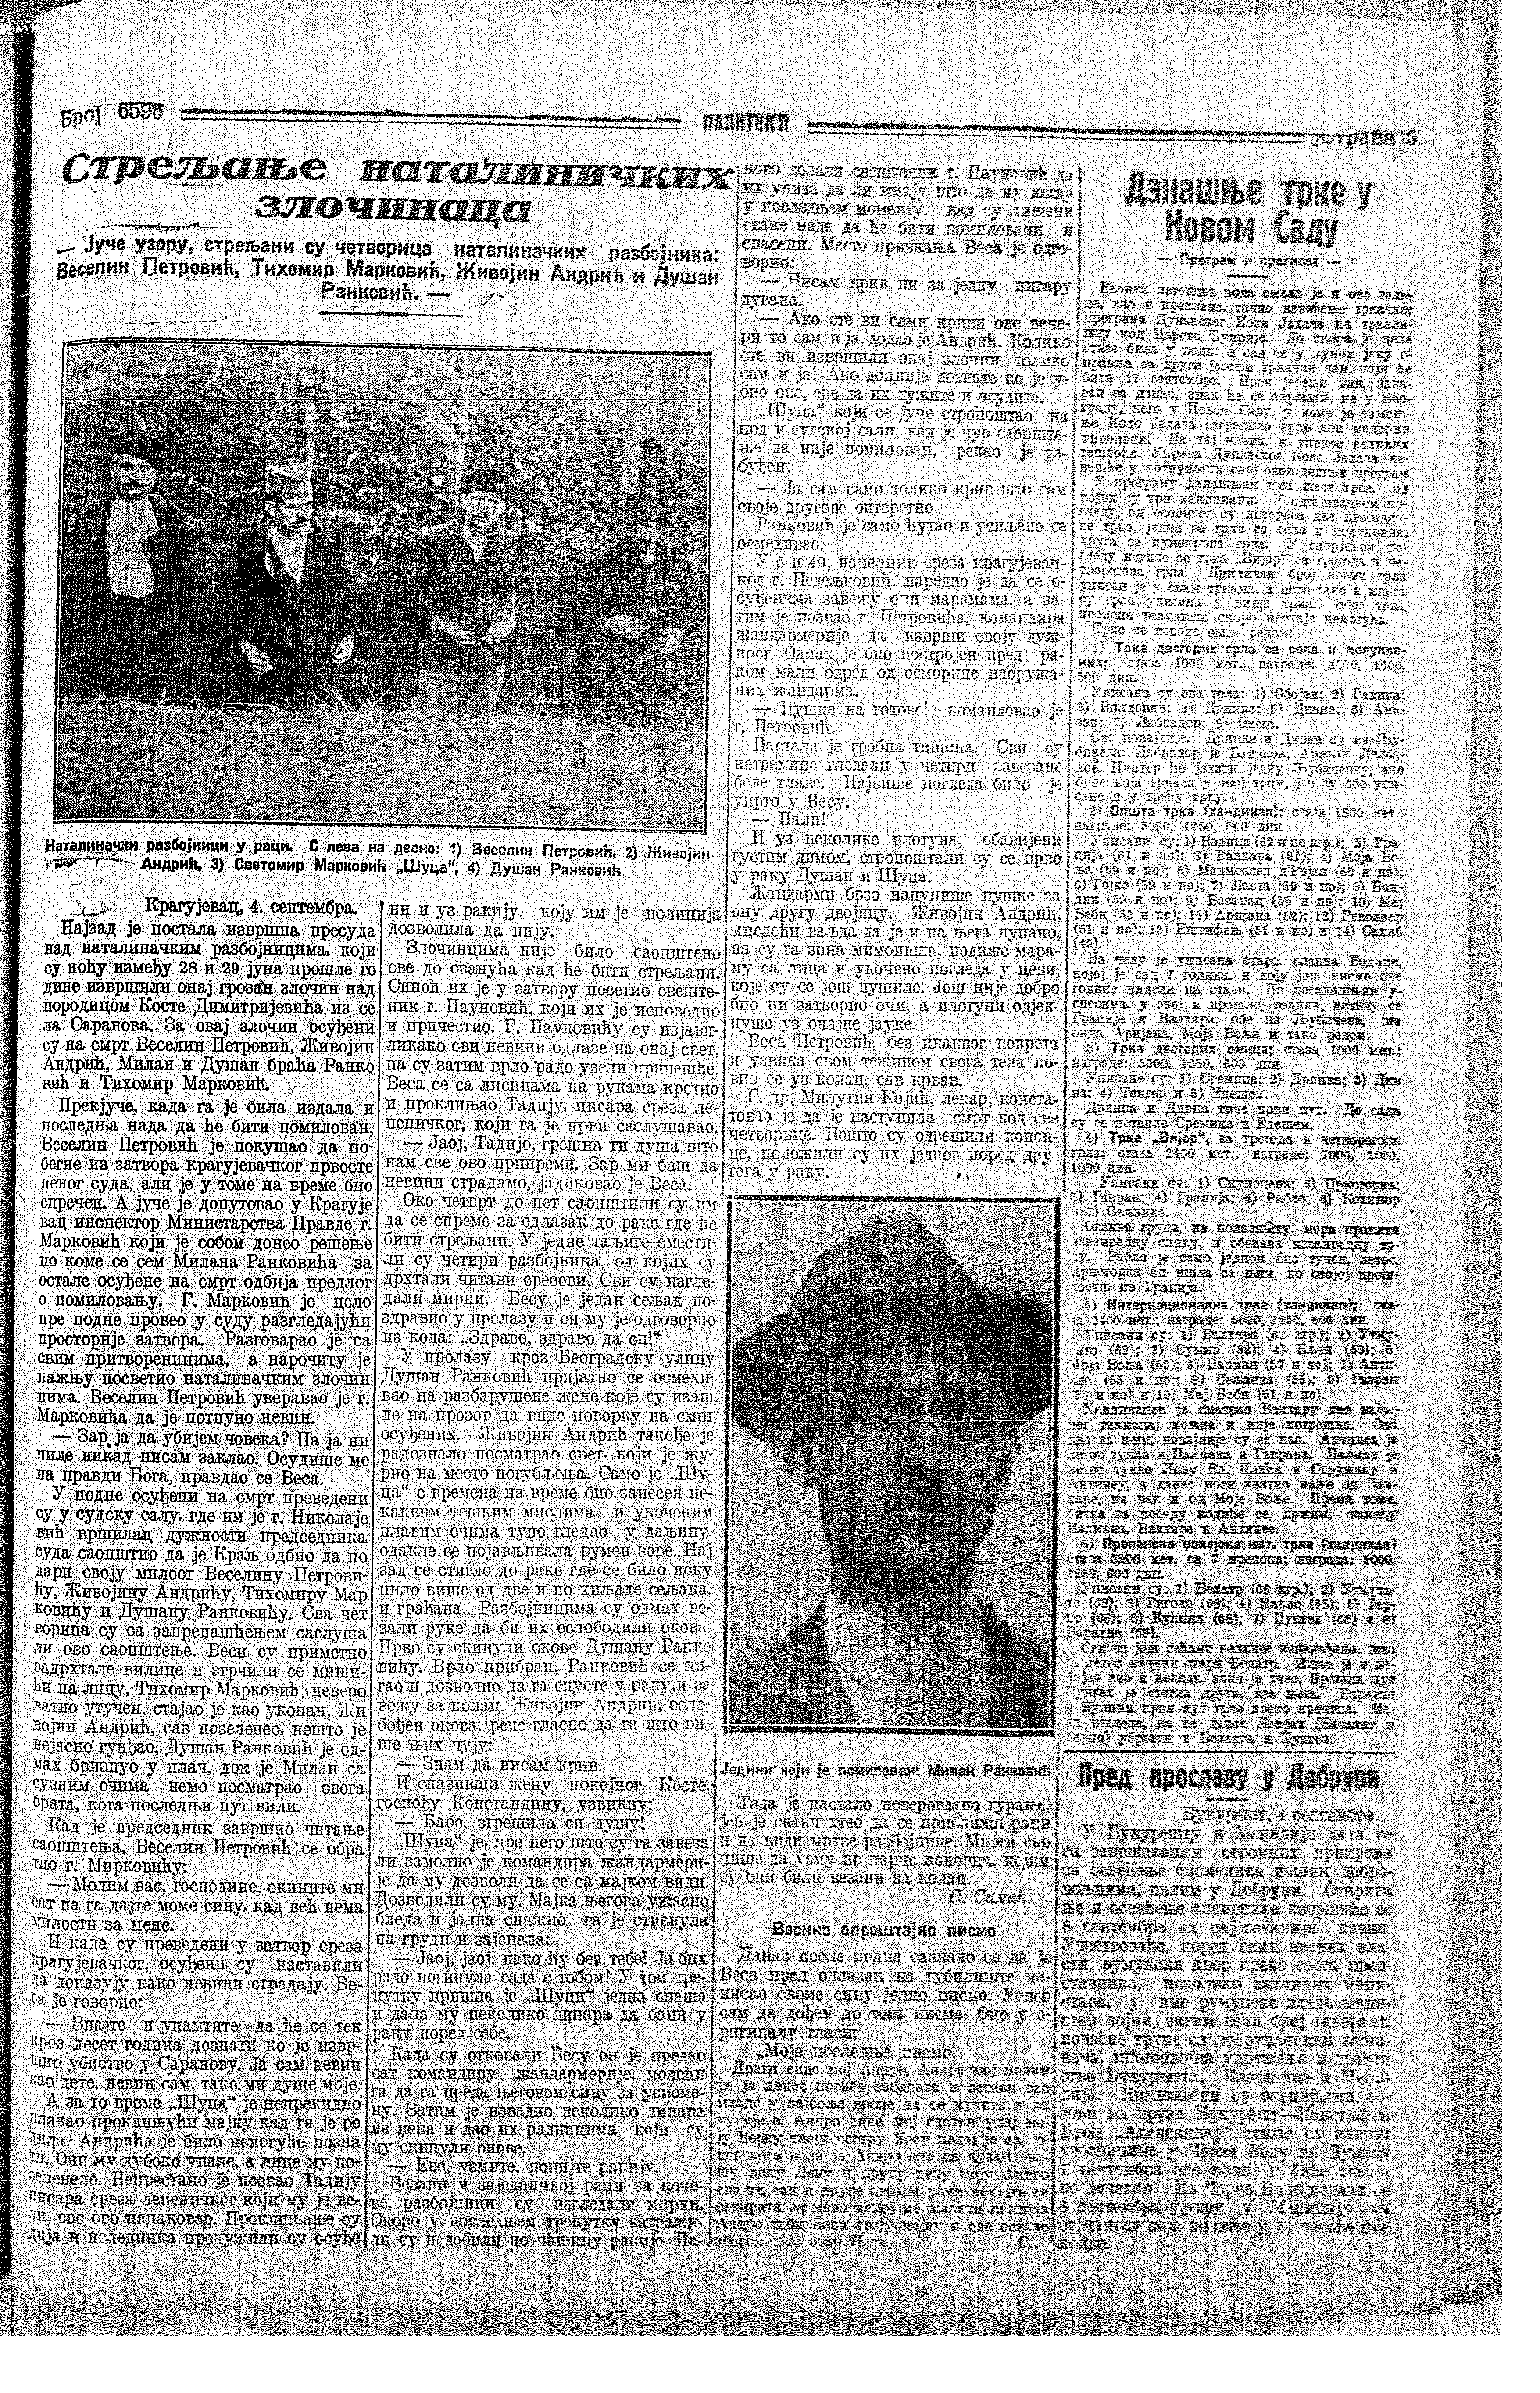 Streljanje natalinačkih zločinaca, Politika, 05.09.1926.